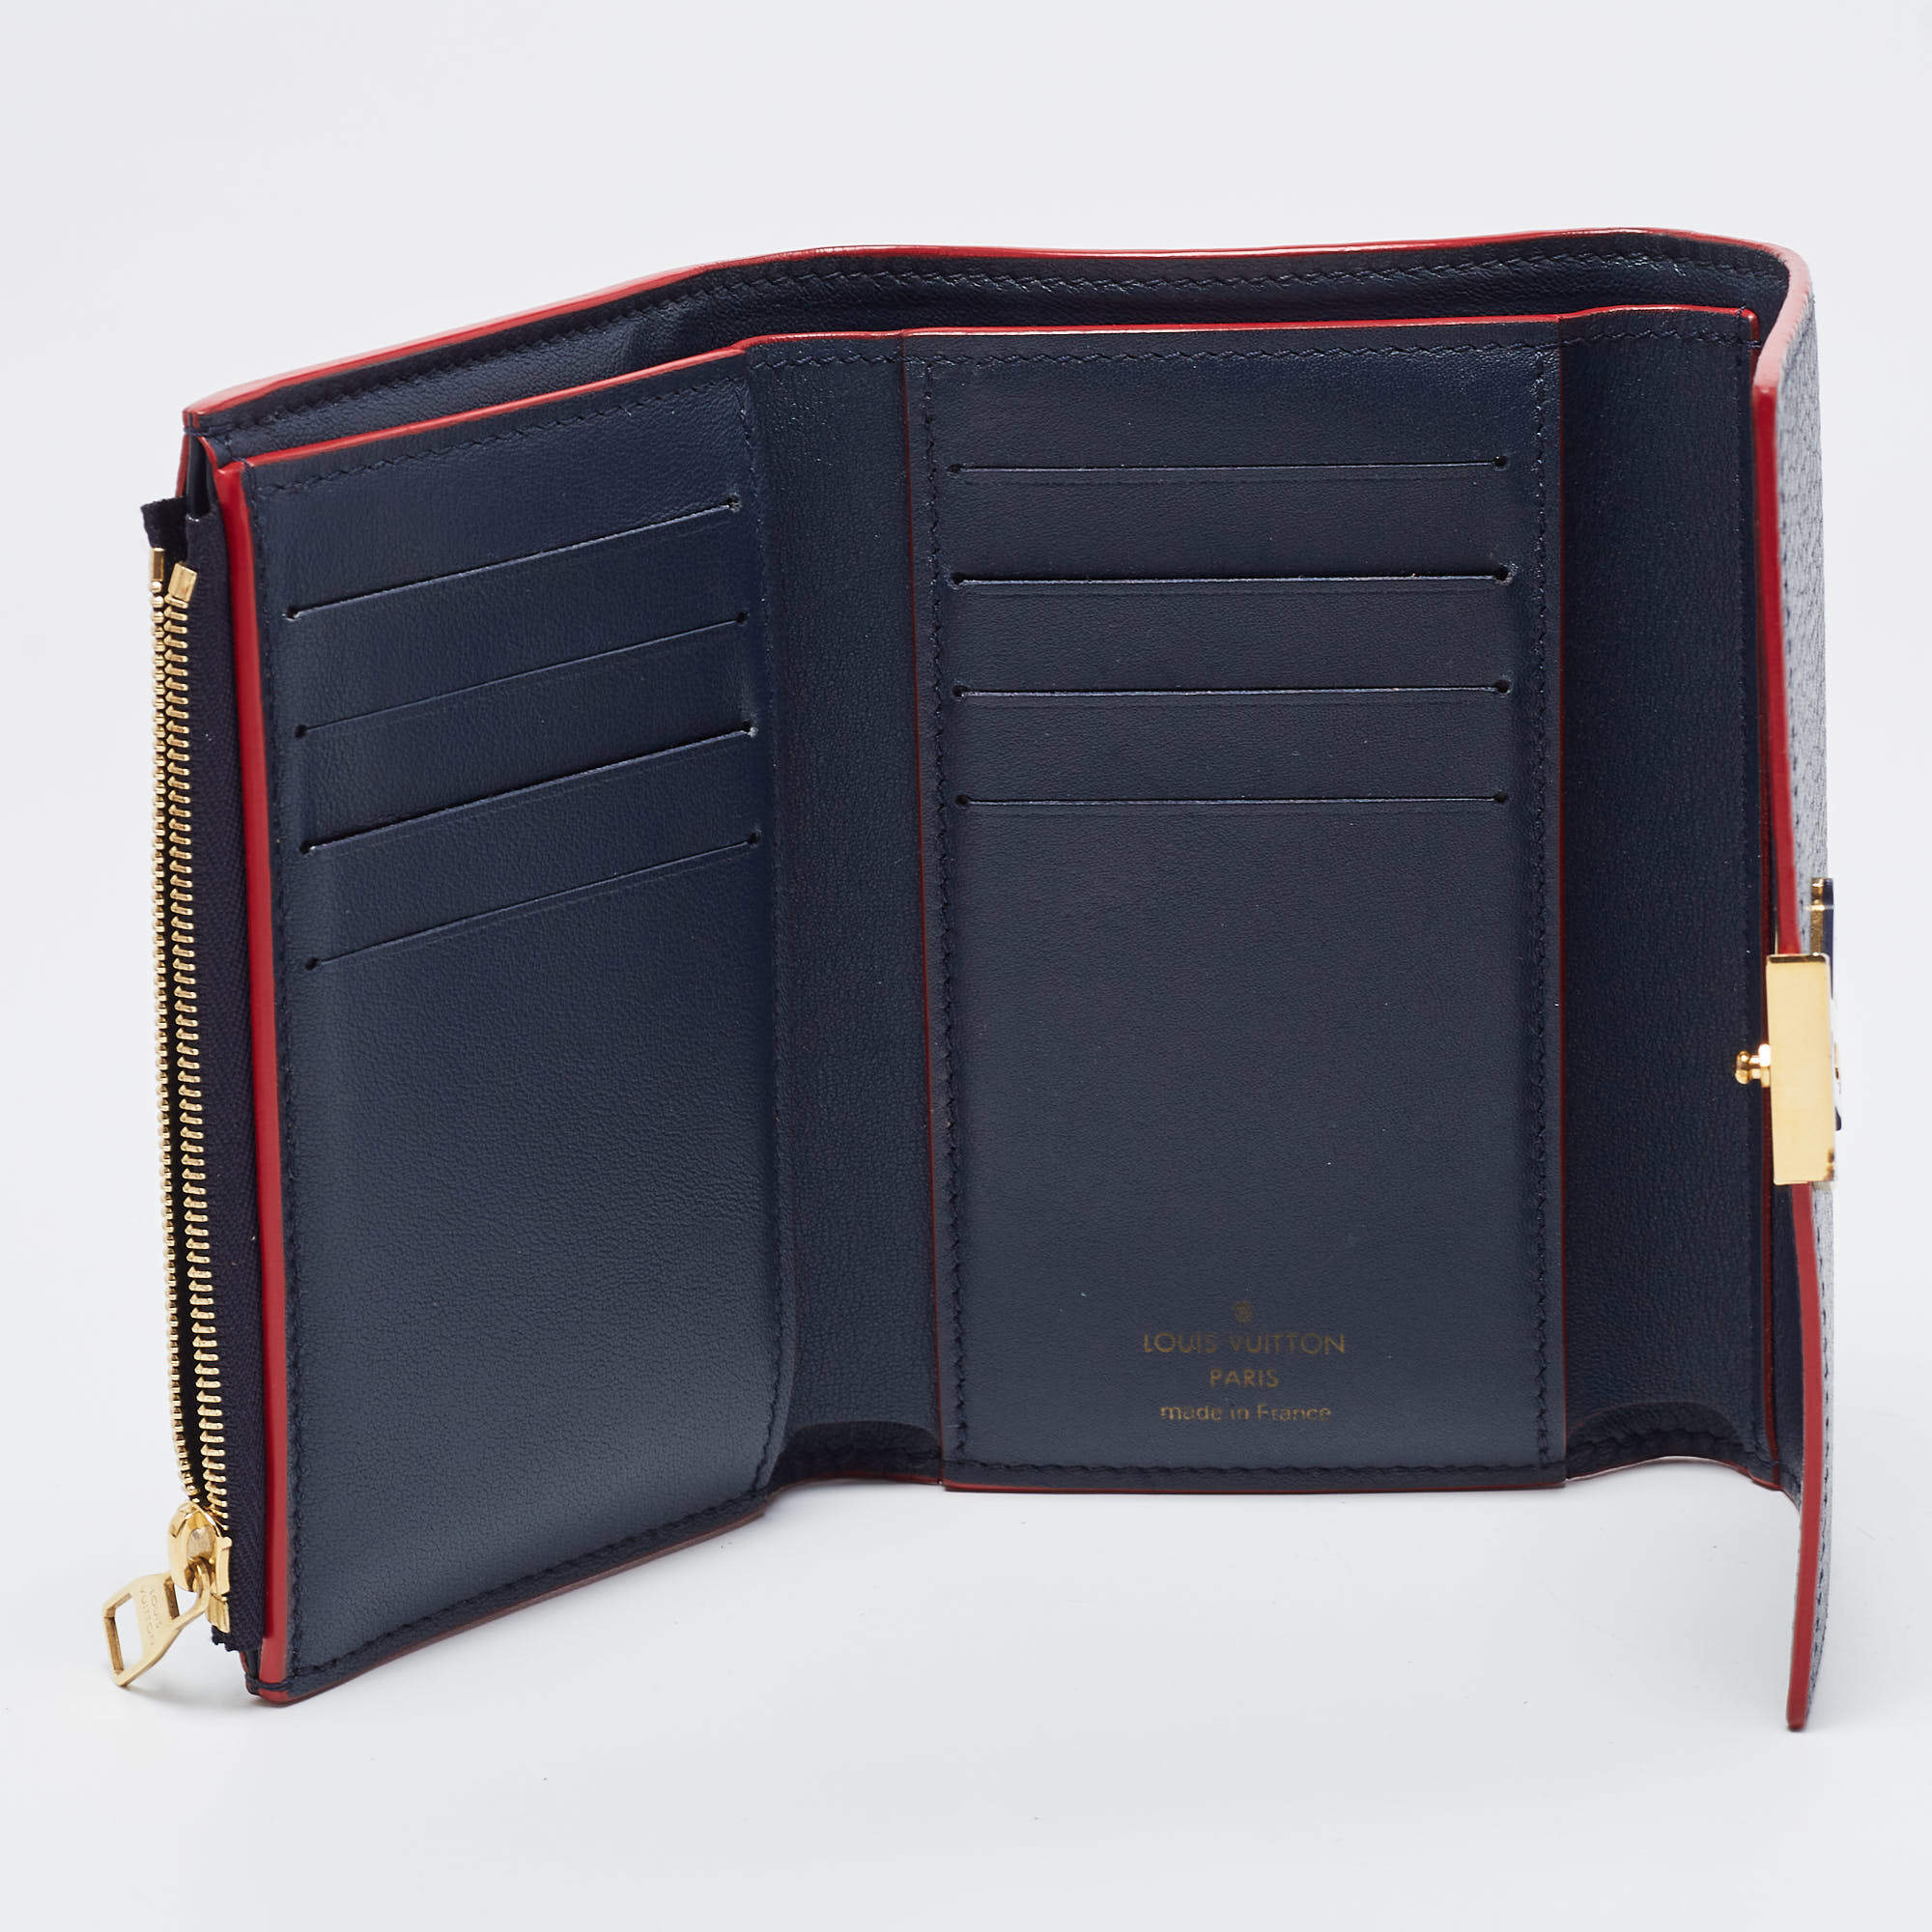 Louis Vuitton Marine Rouge Taurillion Leather Capucines Compact Wallet  Louis Vuitton